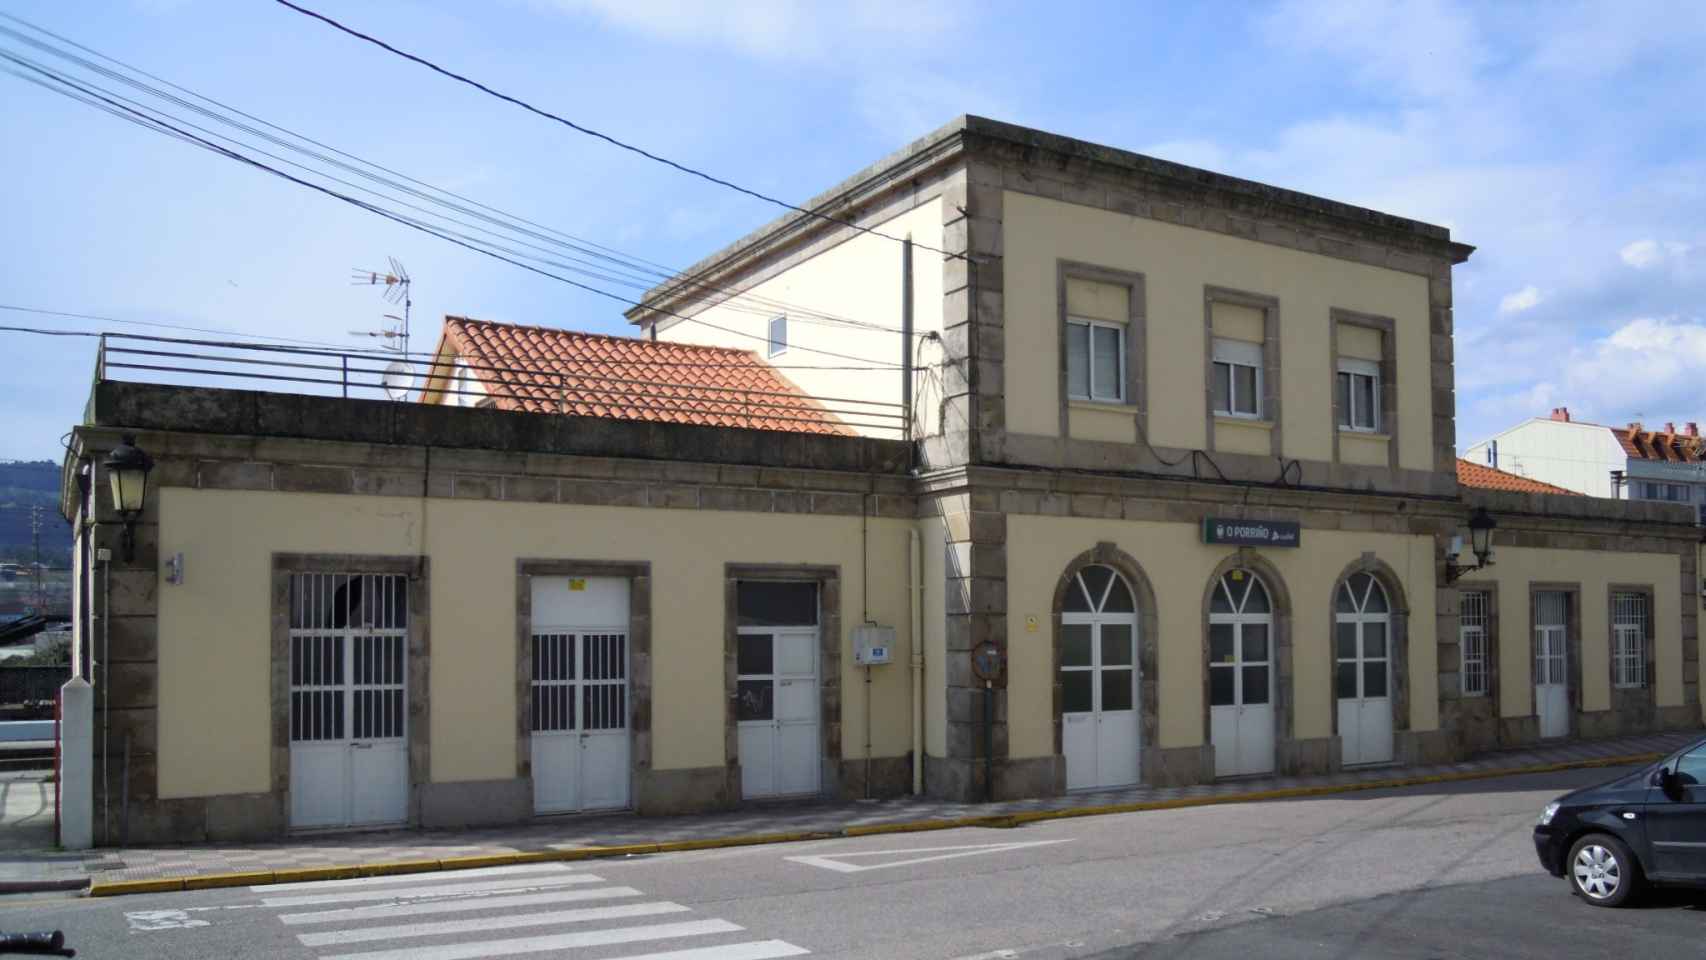 Estación de tren de O Porriño.